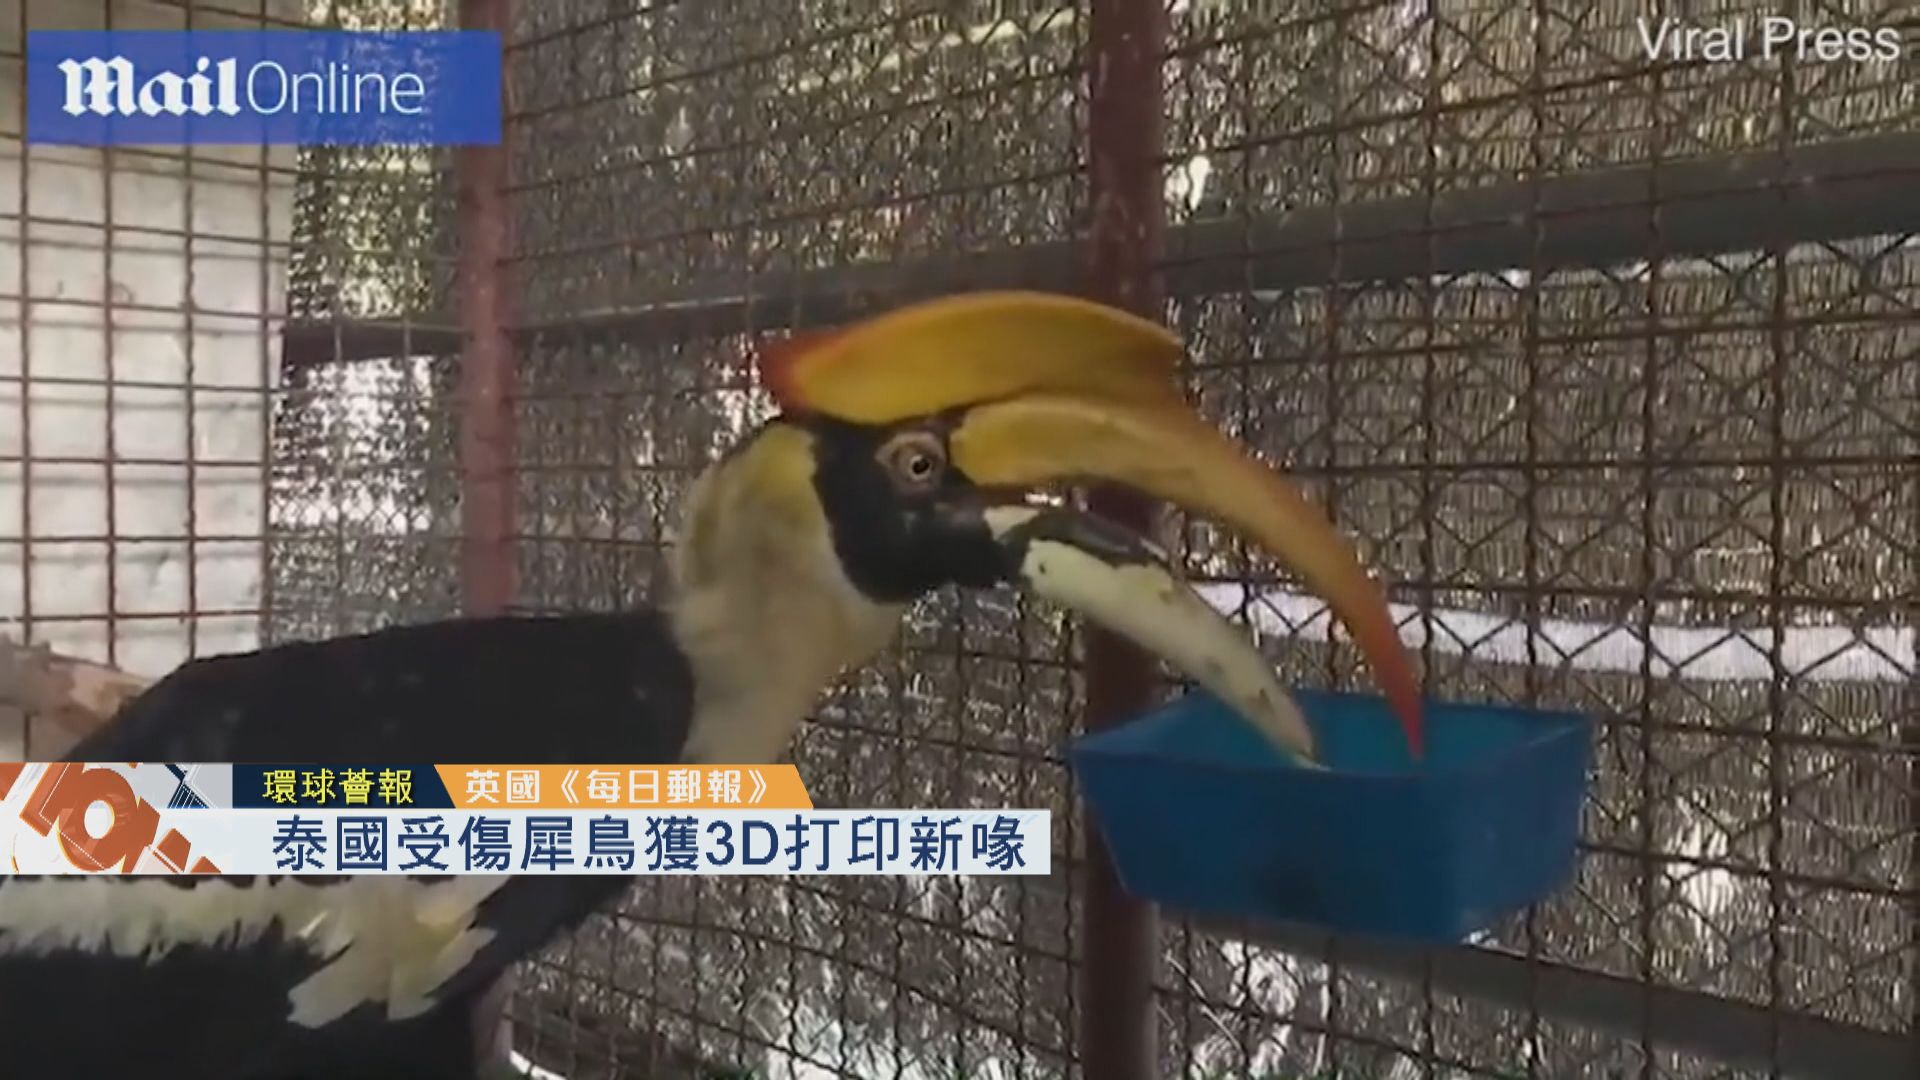 【環球薈報】泰國受傷犀鳥獲3D打印新喙